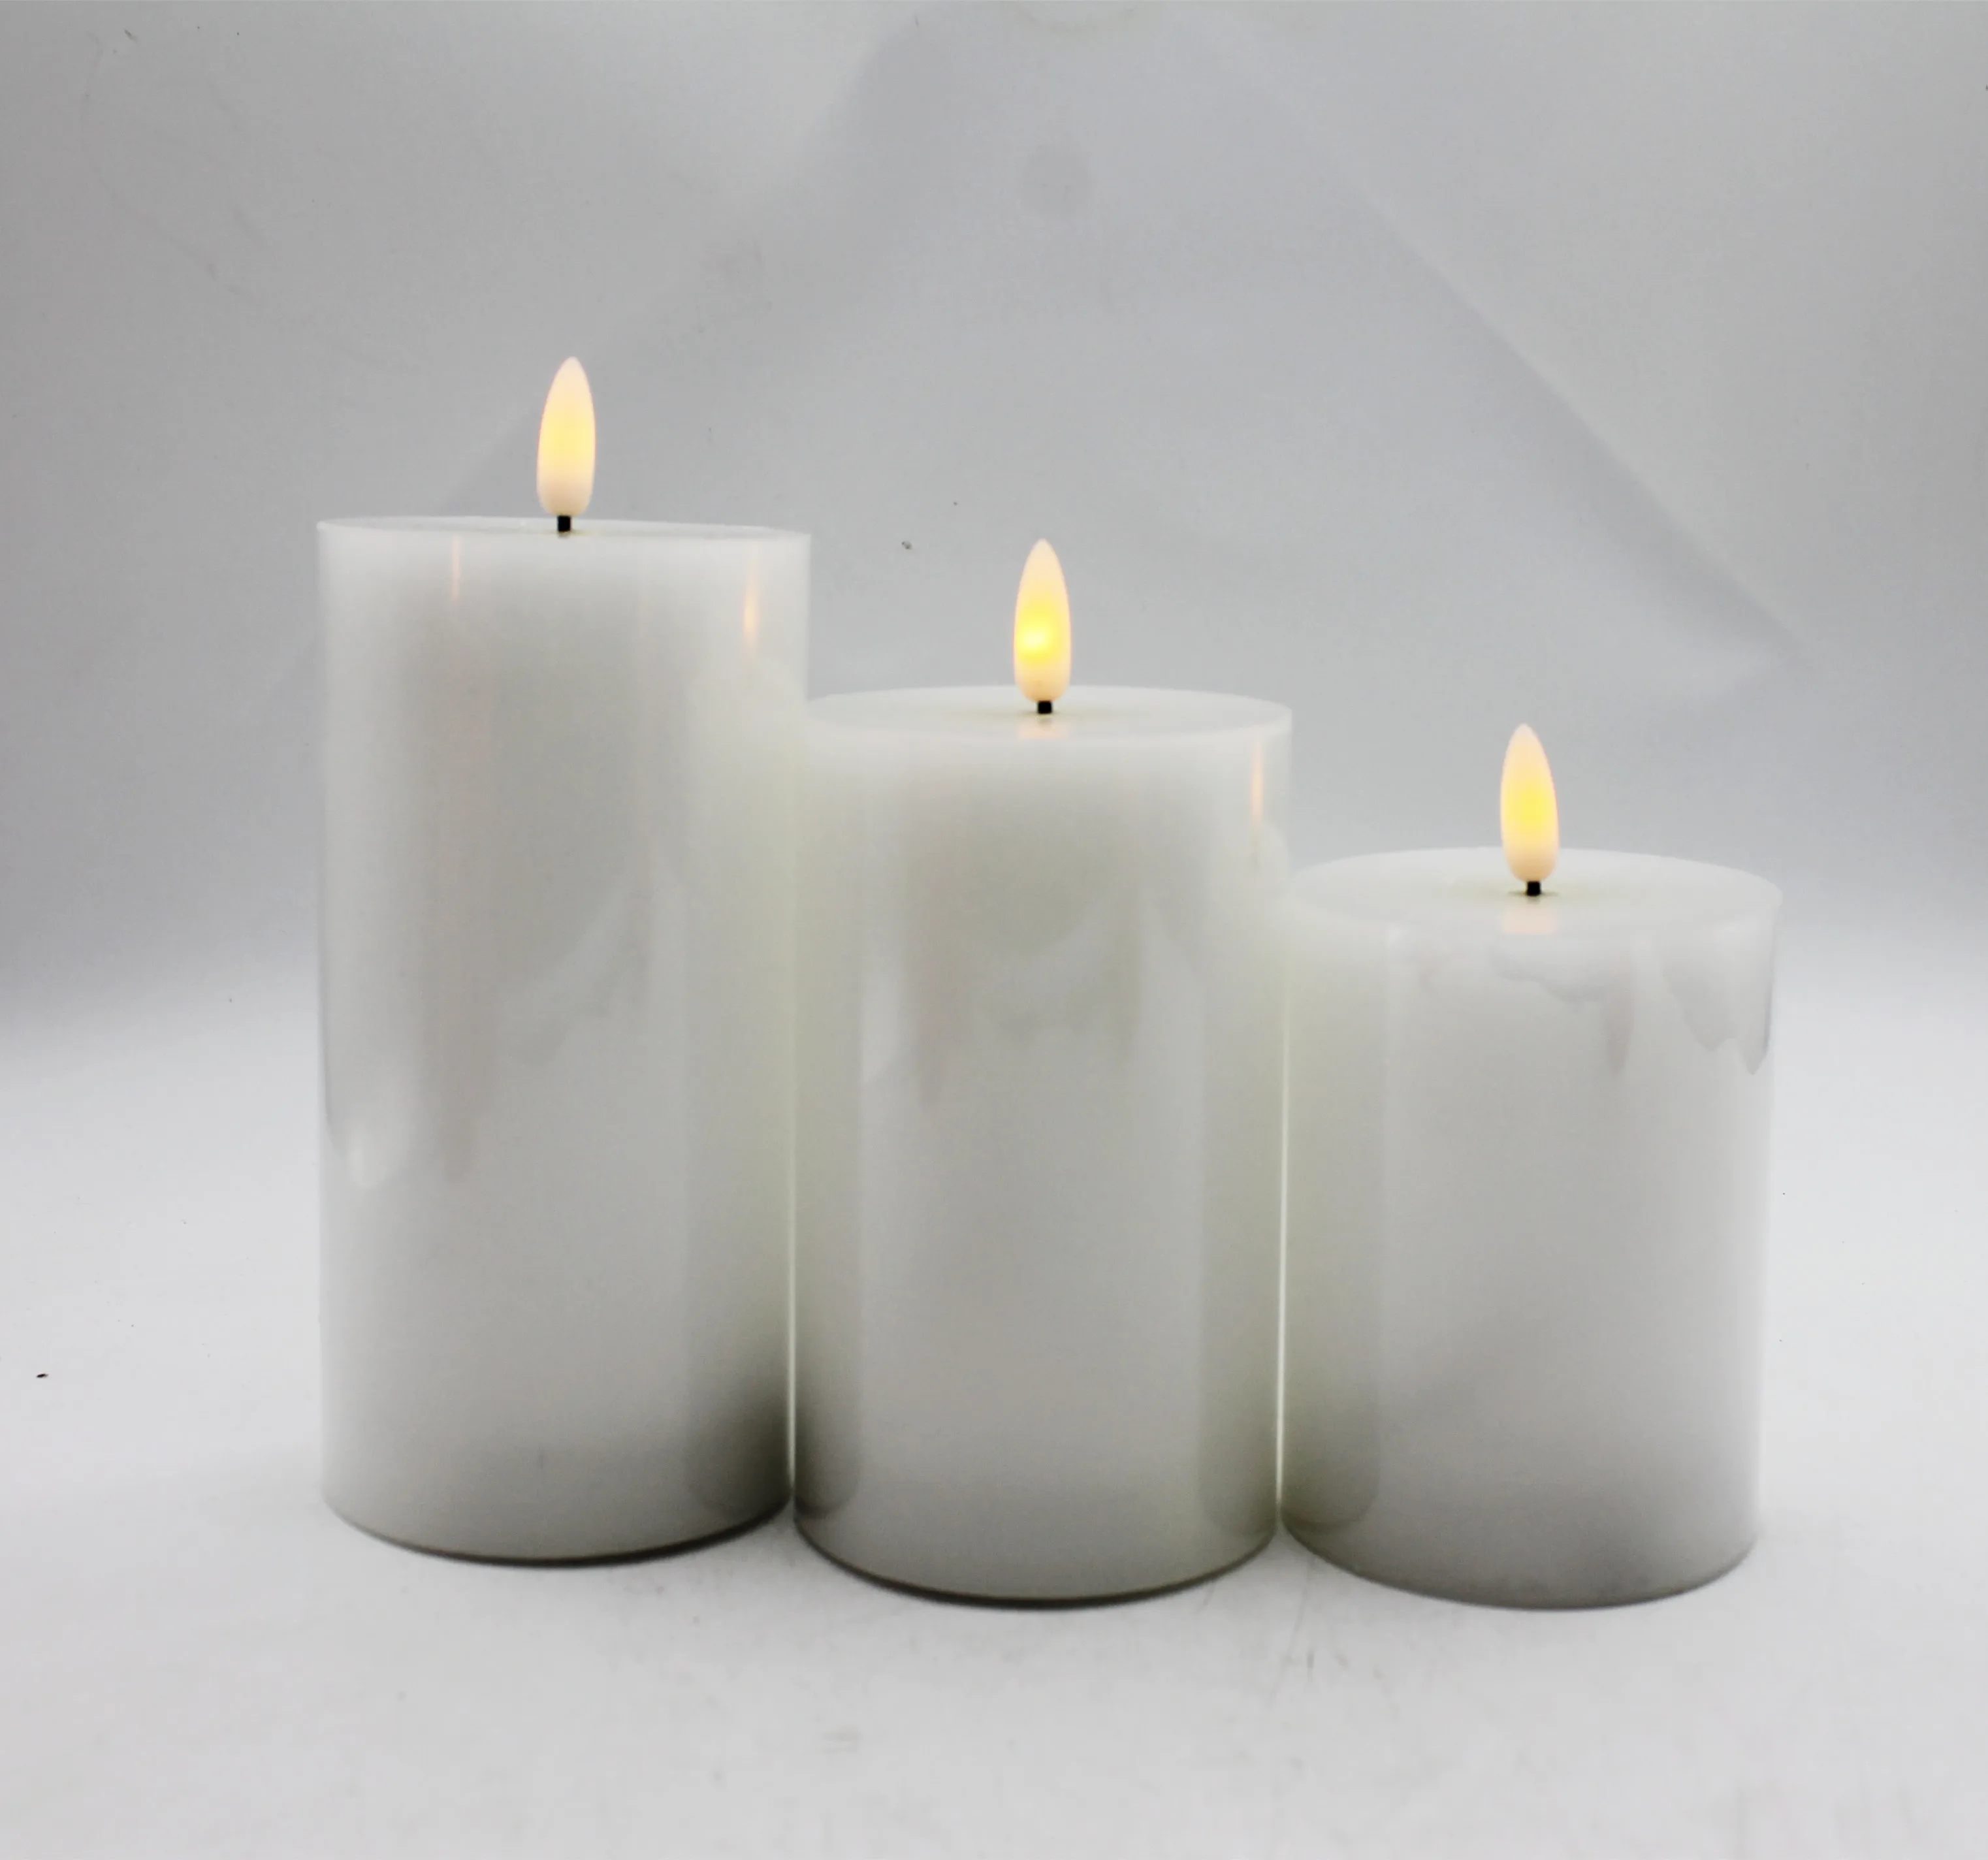 白色支柱秋千无焰香味电动led蜡烛塑料,用于家庭婚礼生日聚会装饰